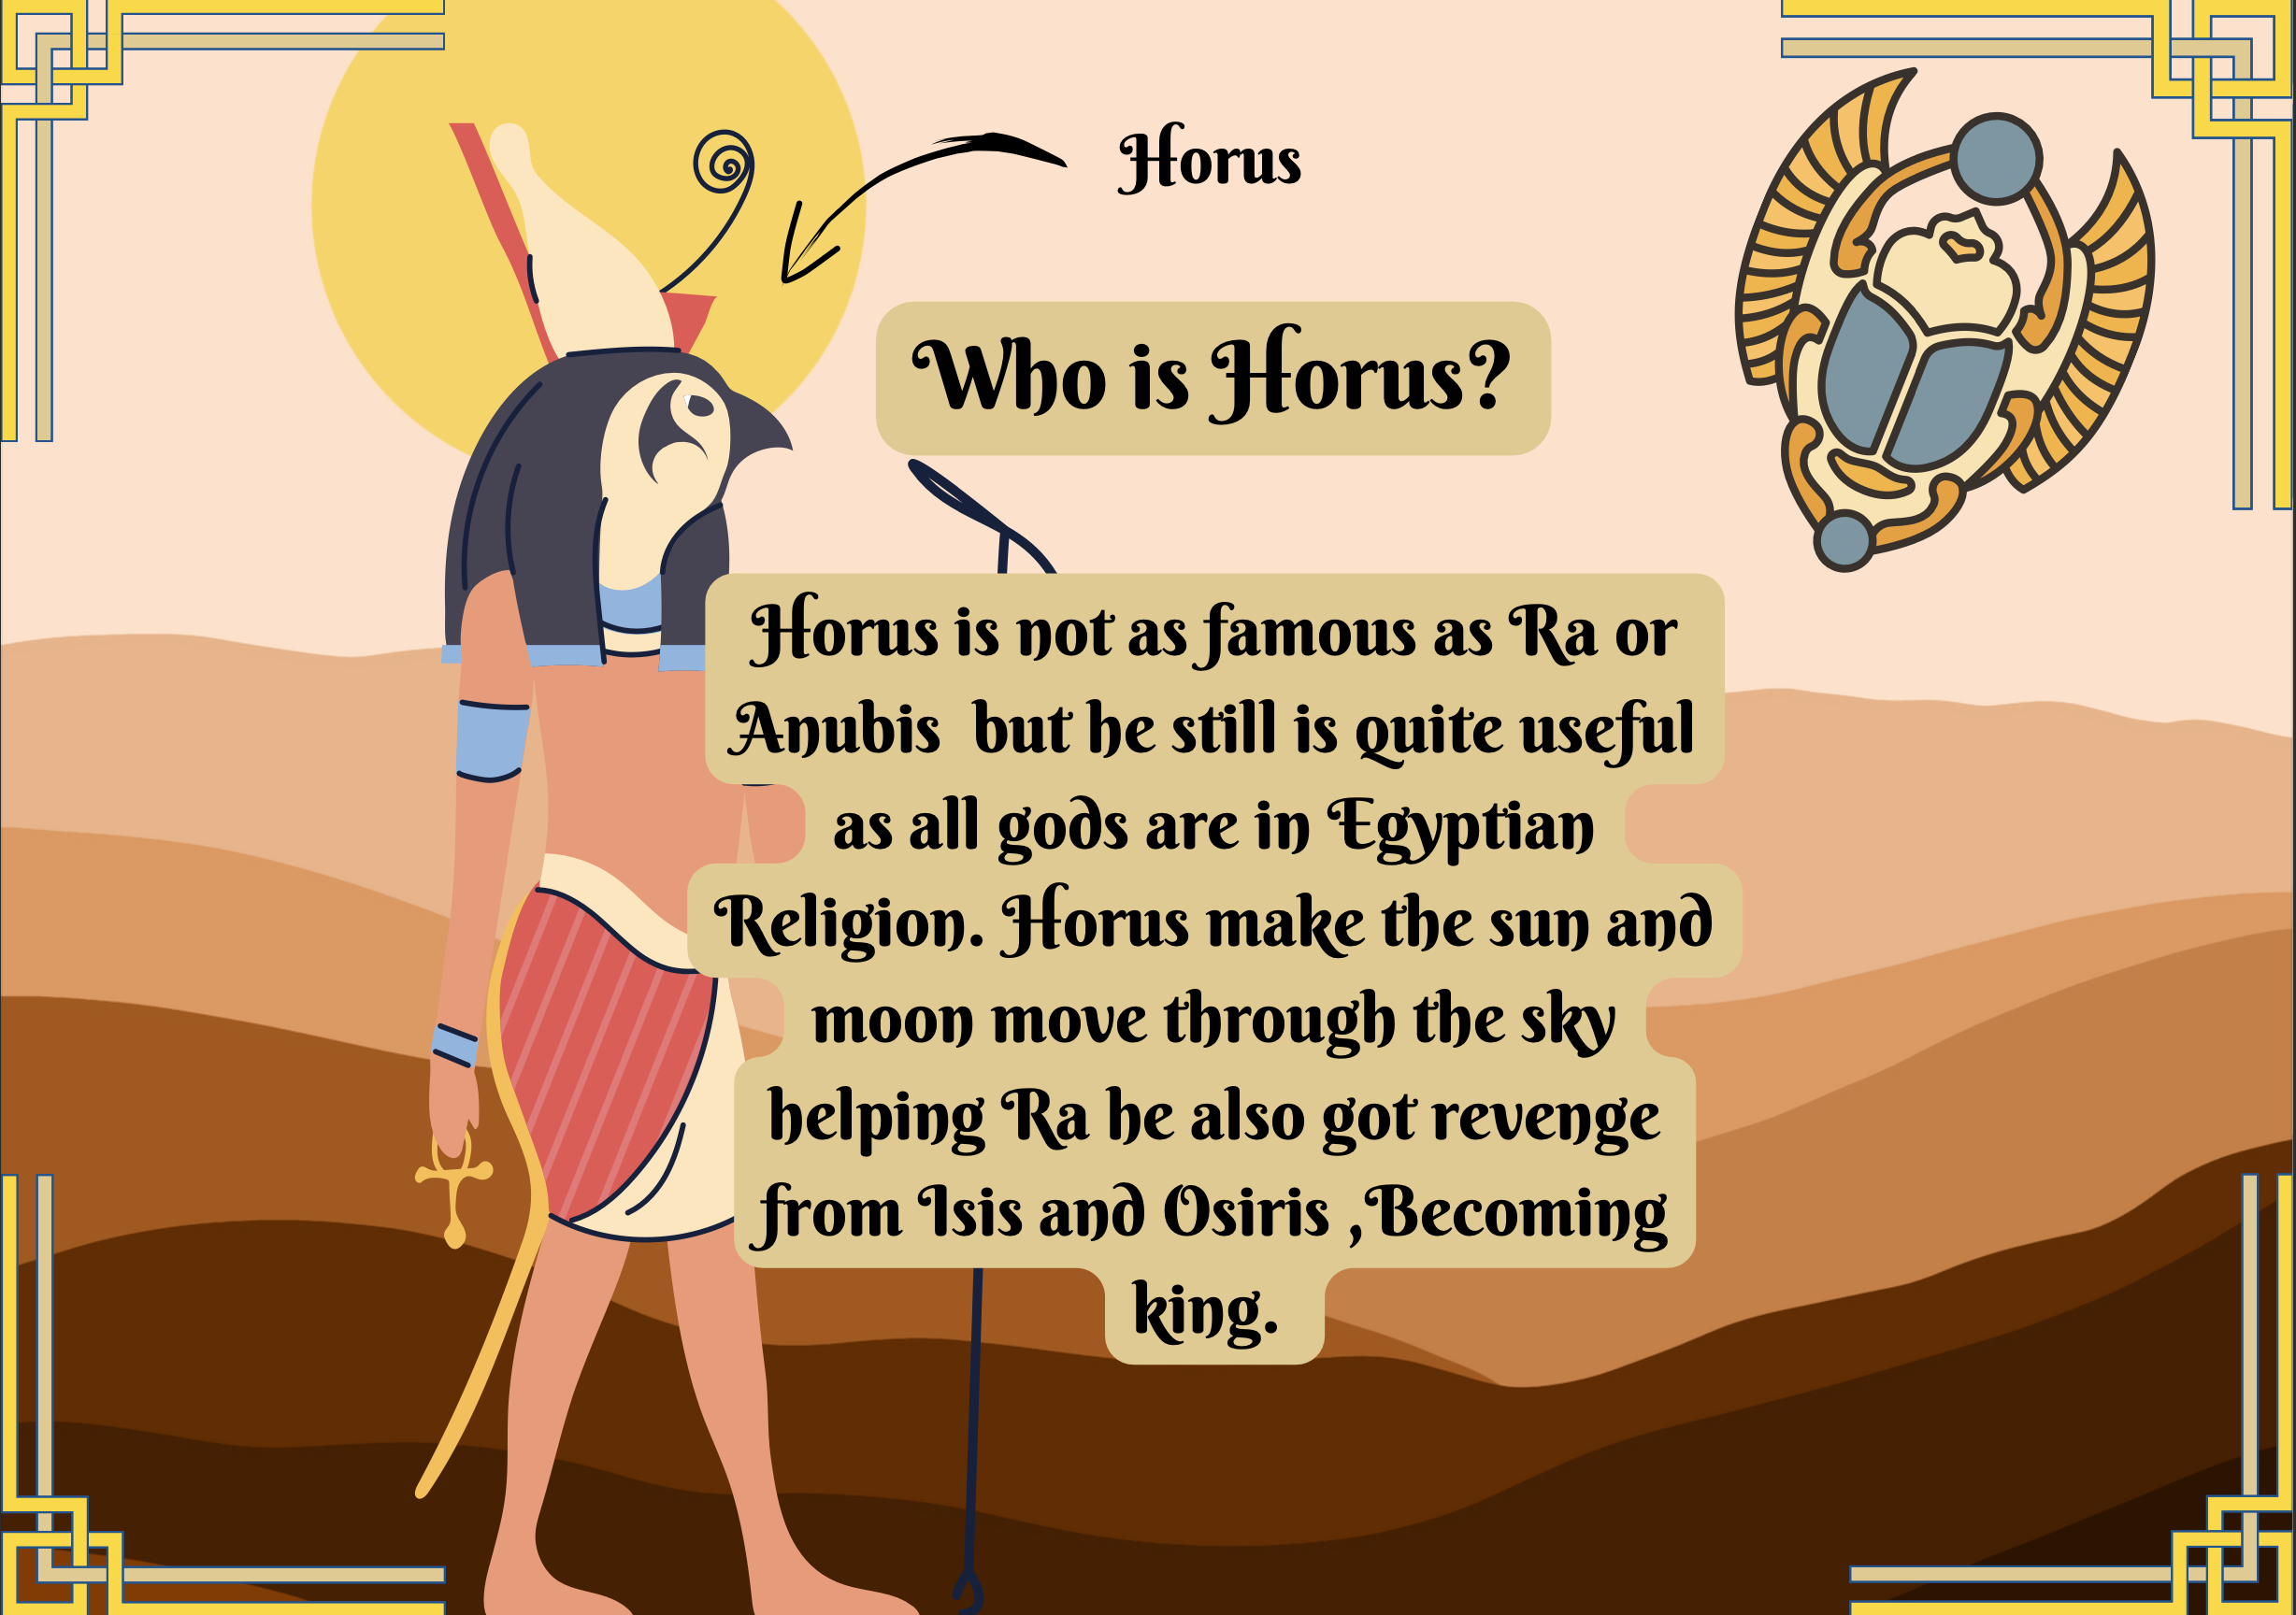 Excerpt from Adam Marciniak's Poster on Horus 2